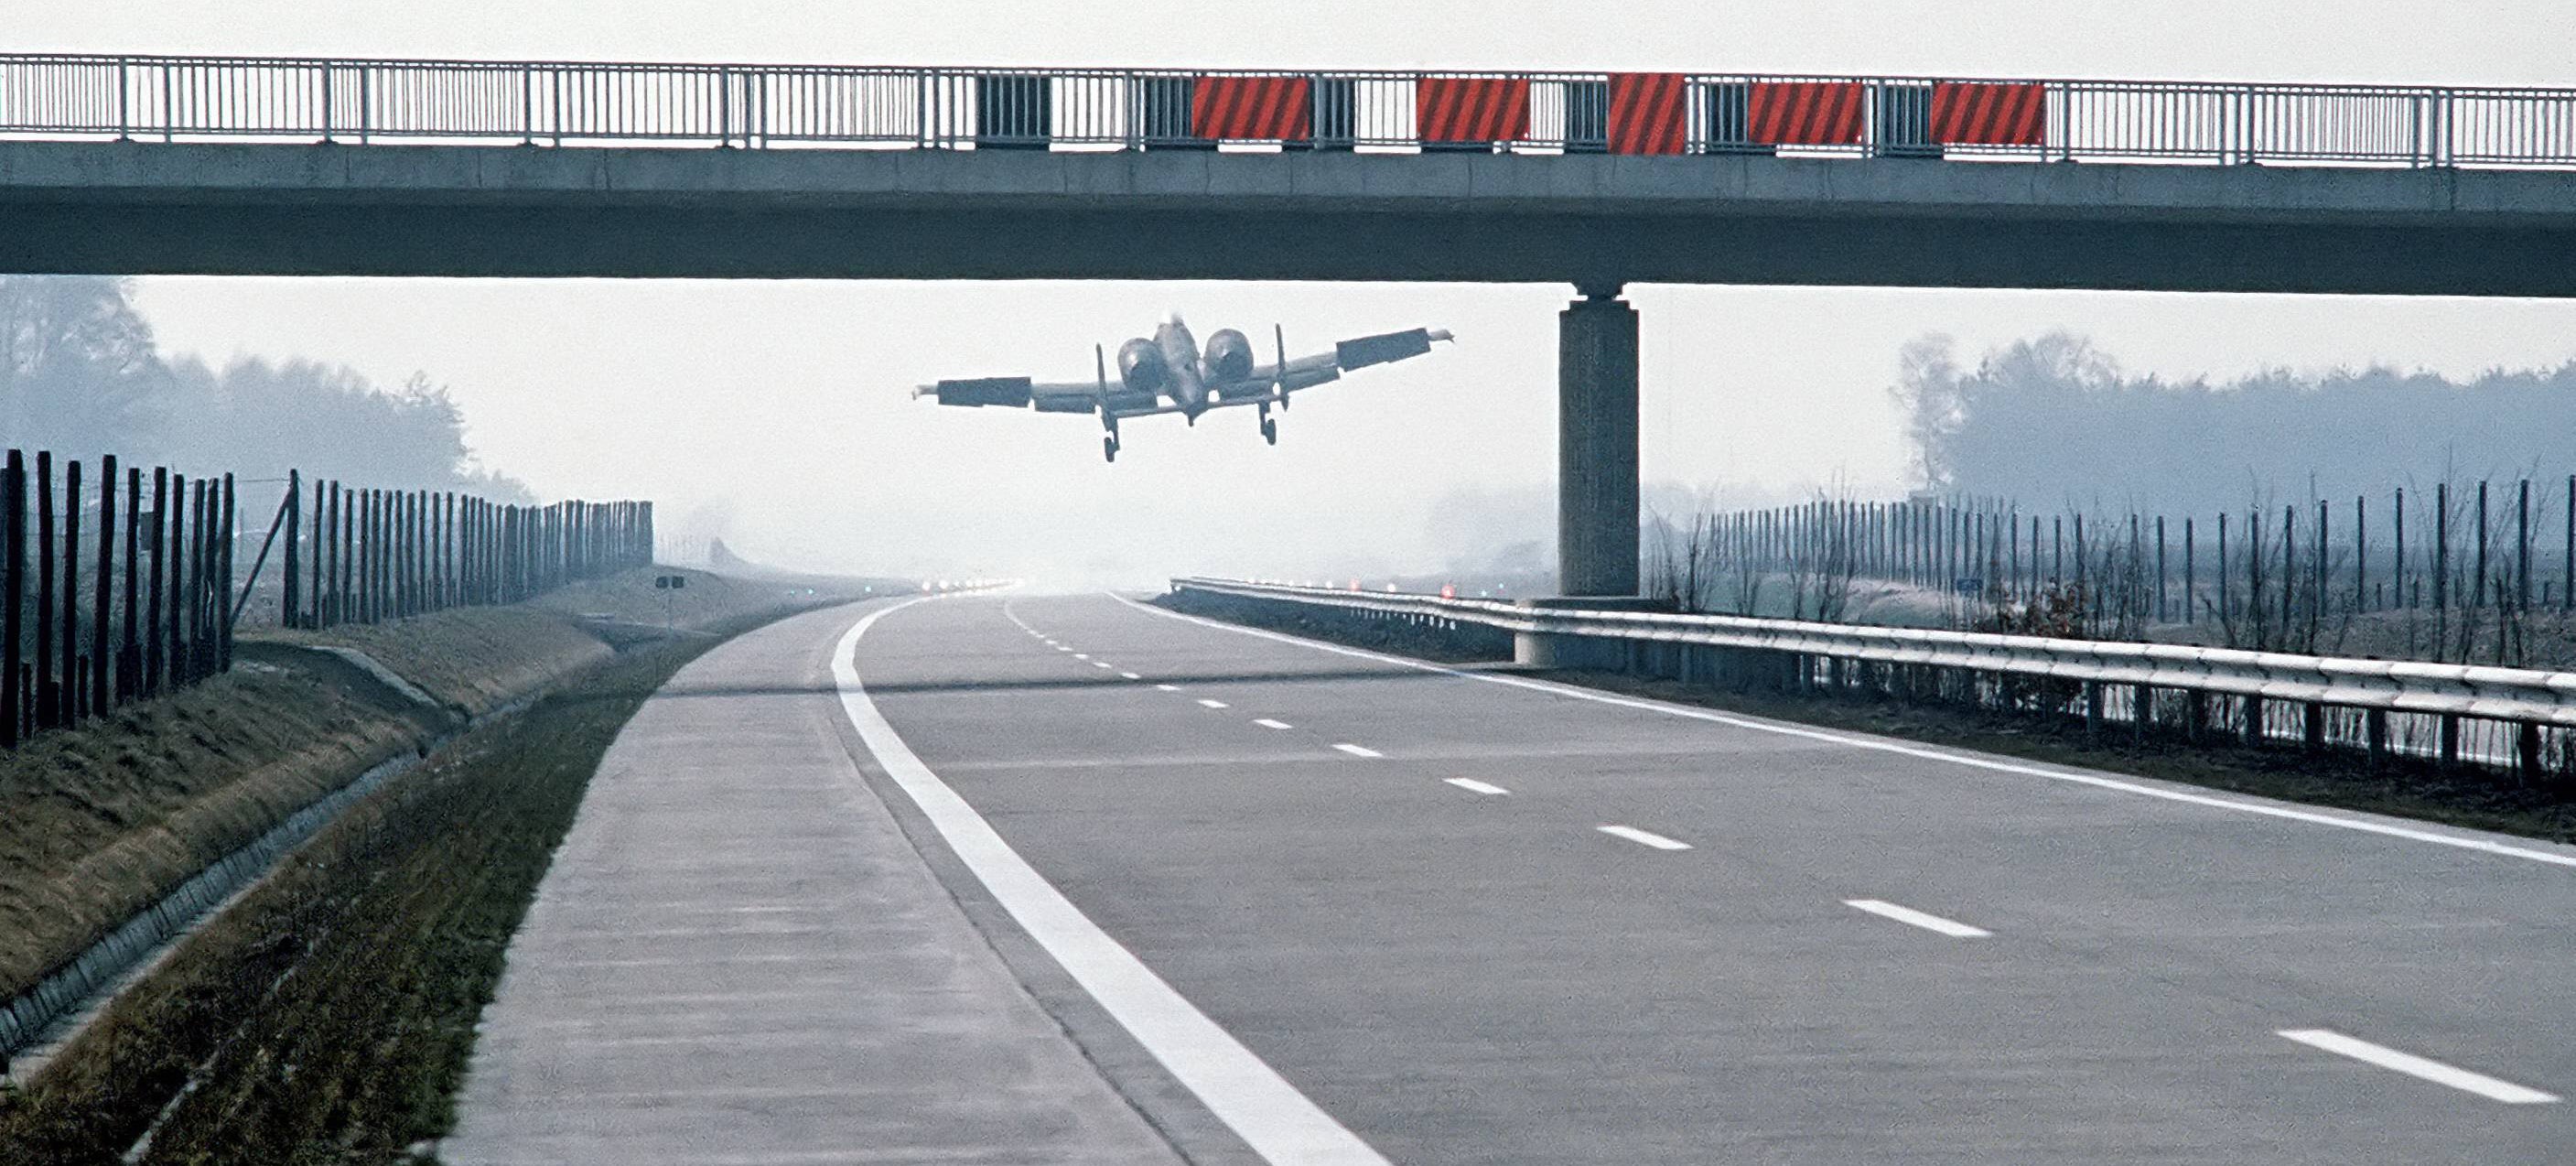 A-10 Thunderbolt attack jet lands on German highway